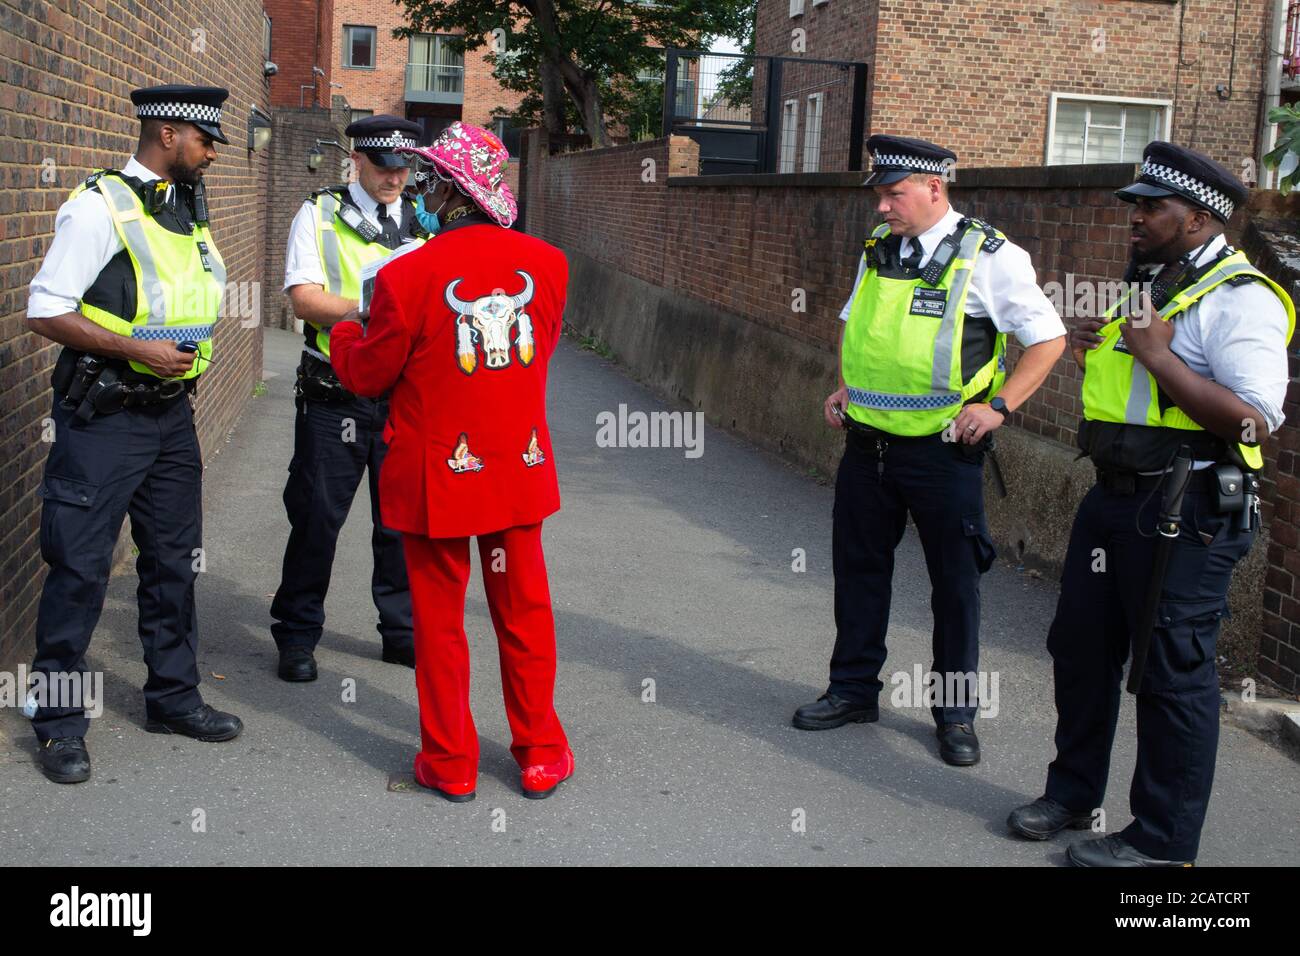 Un manifestant s'adresse aux policiers à l'extérieur du poste de police de Tottenham pendant la manifestation. Les manifestants appellent le gouvernement à éliminer l'article 60 (arrêt et recherche sans suspicion). Banque D'Images